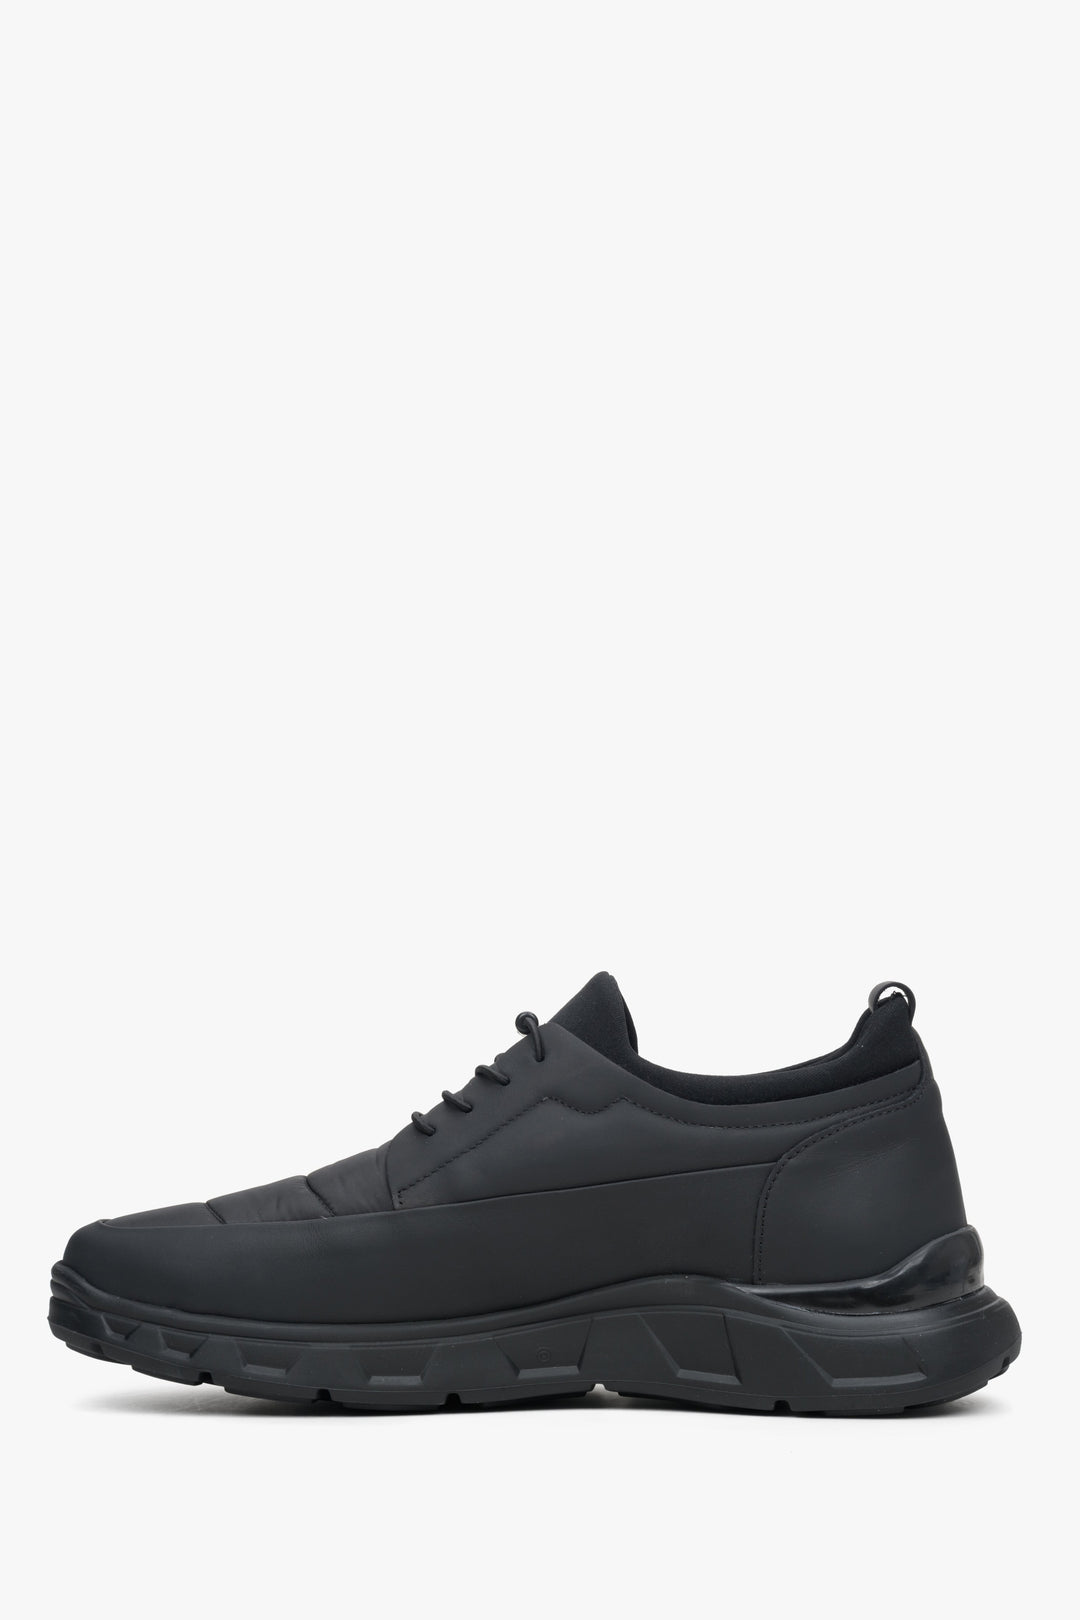 Czarne sneakersy męskie ze ściągaczem Estro - profil buta.